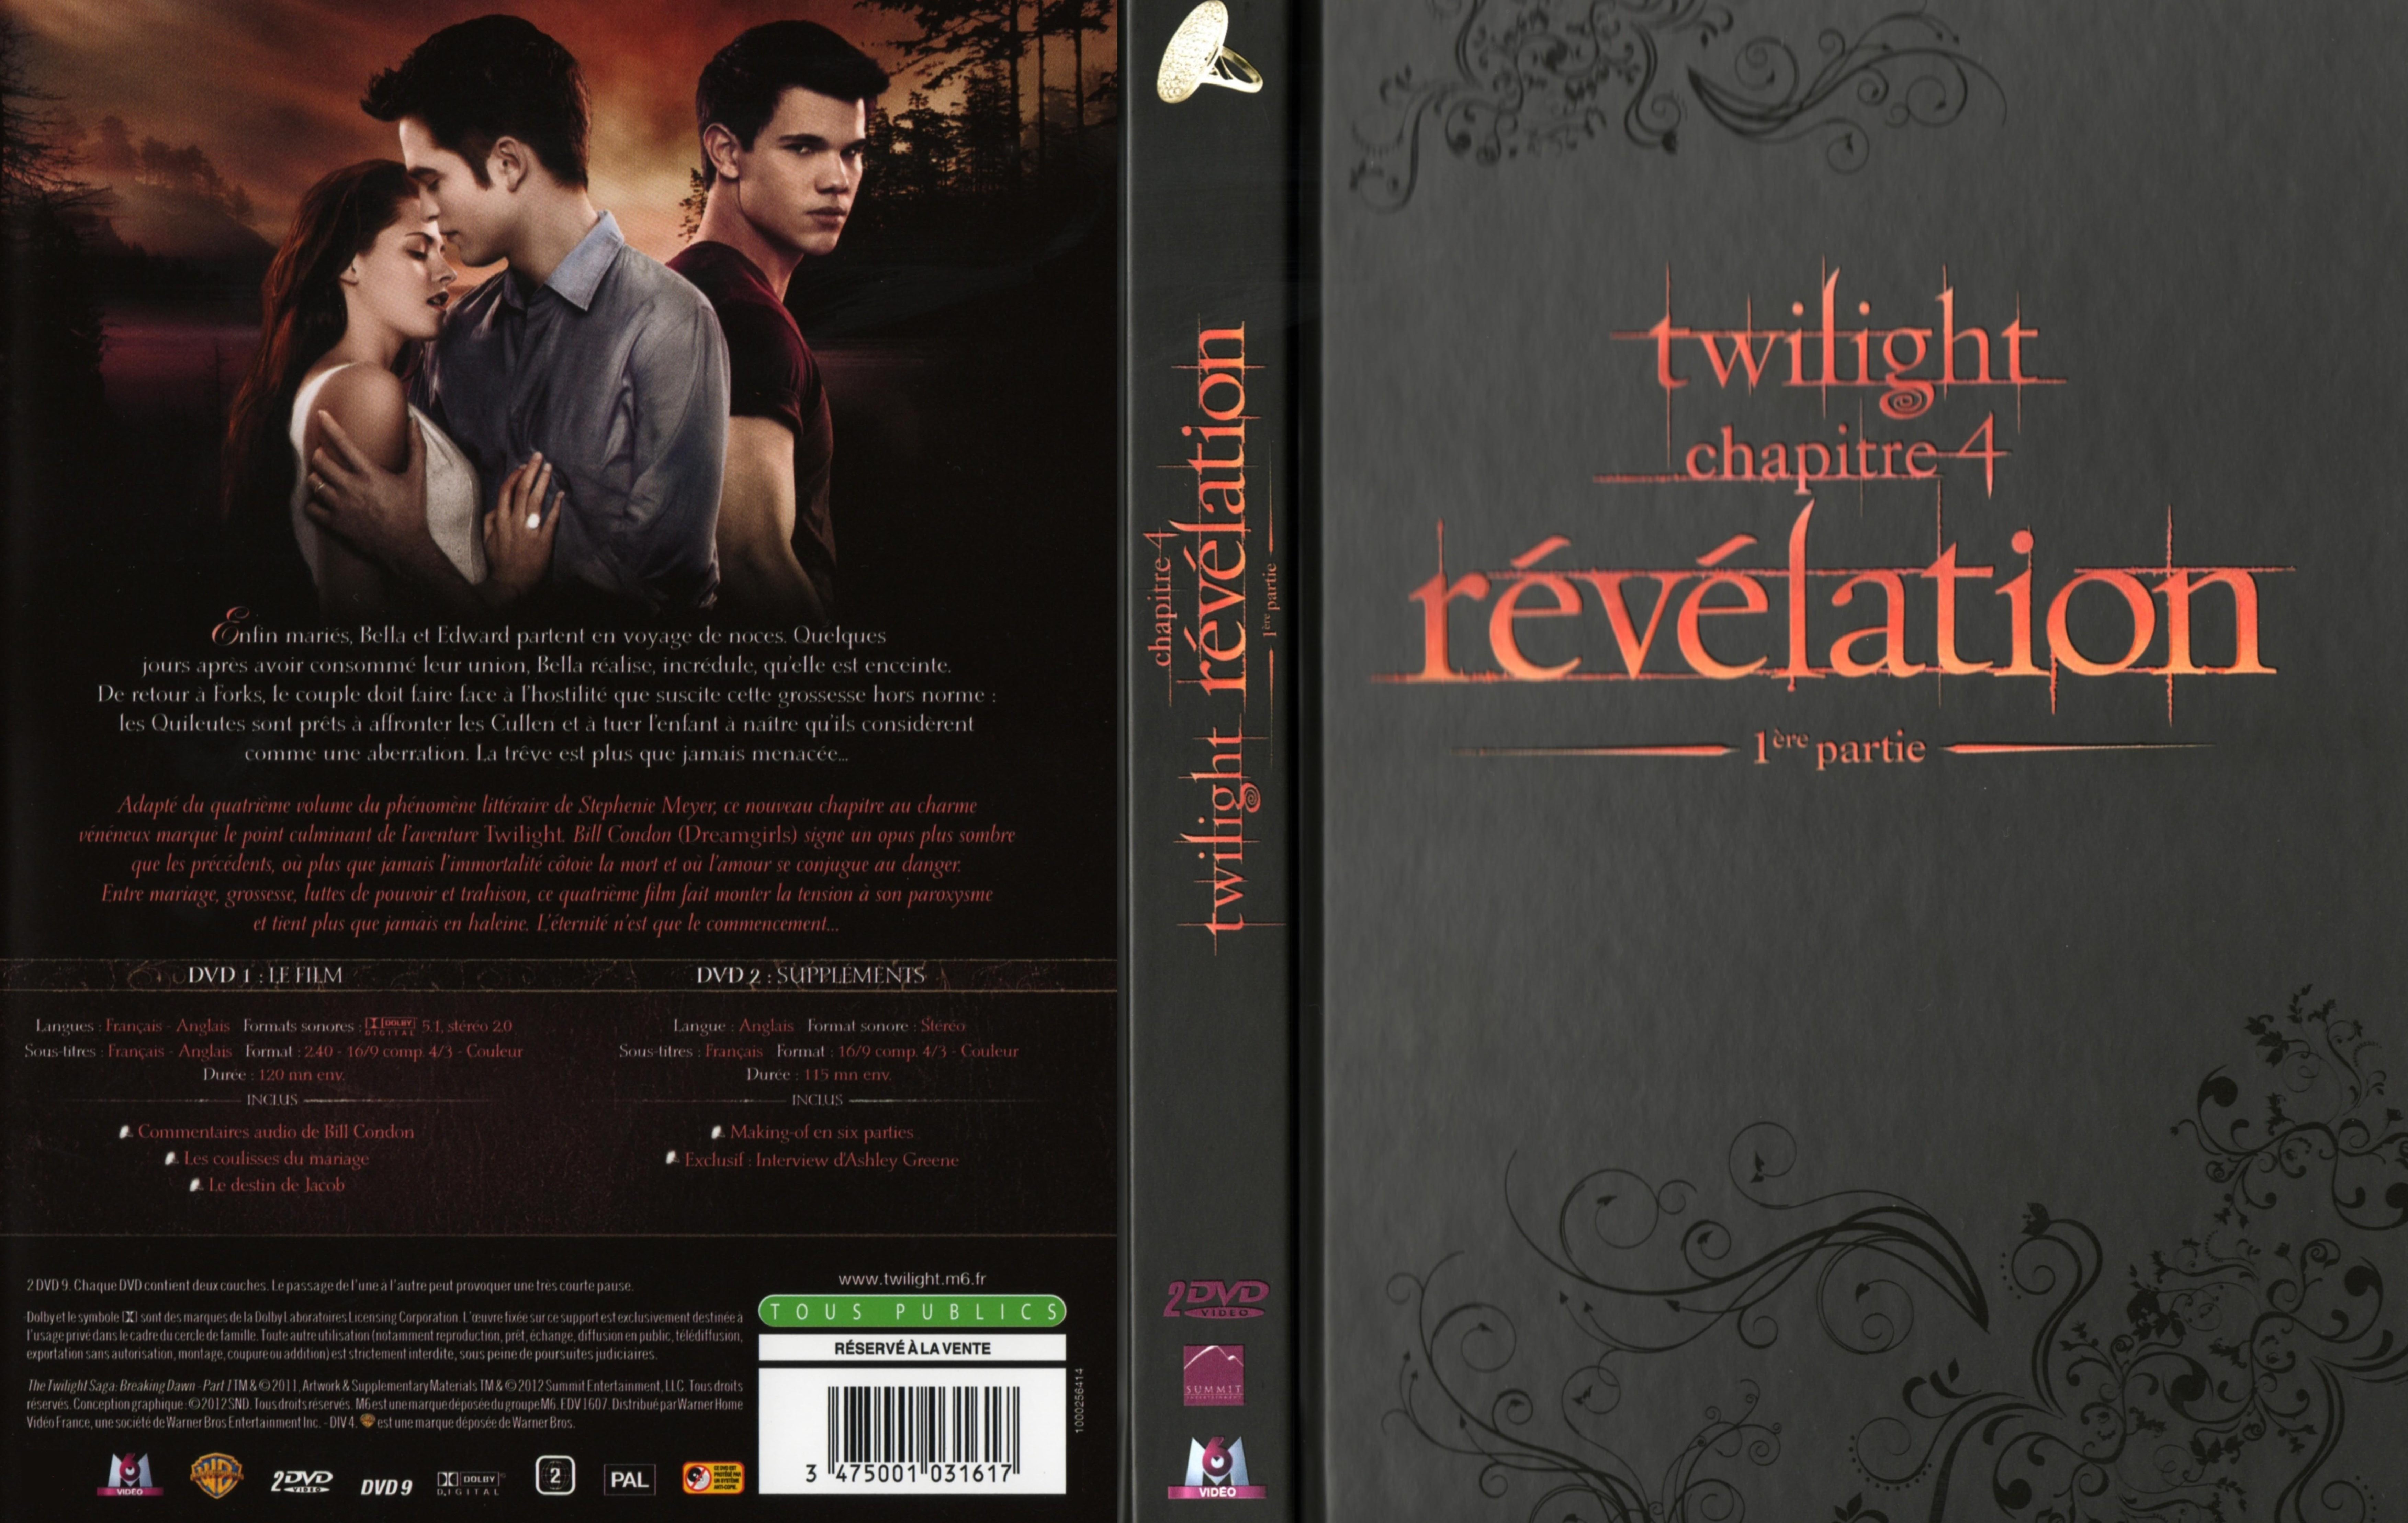 Jaquette DVD Twilight Chapitre 4 : Rvlation 1re partie